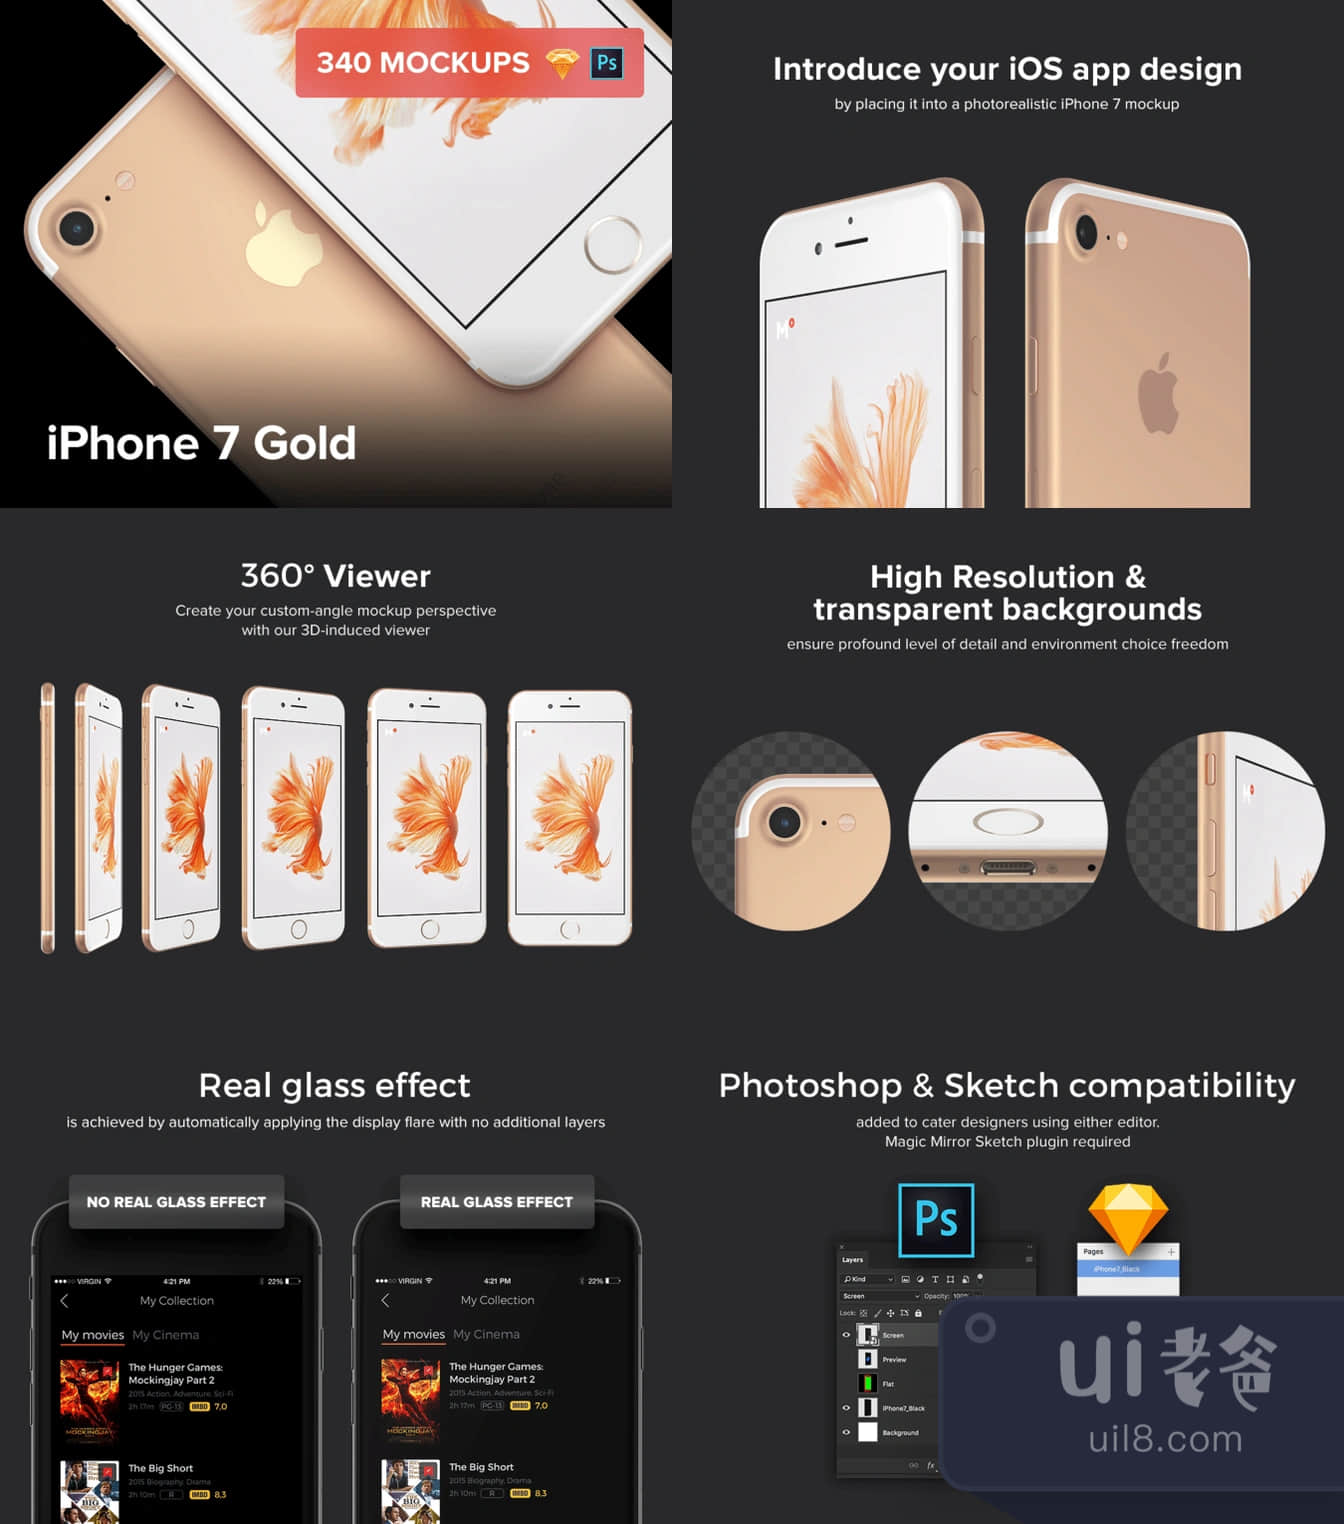 340个iPhone 7金色模拟图 (340 iPhone 7 Gold Mockups)插图1